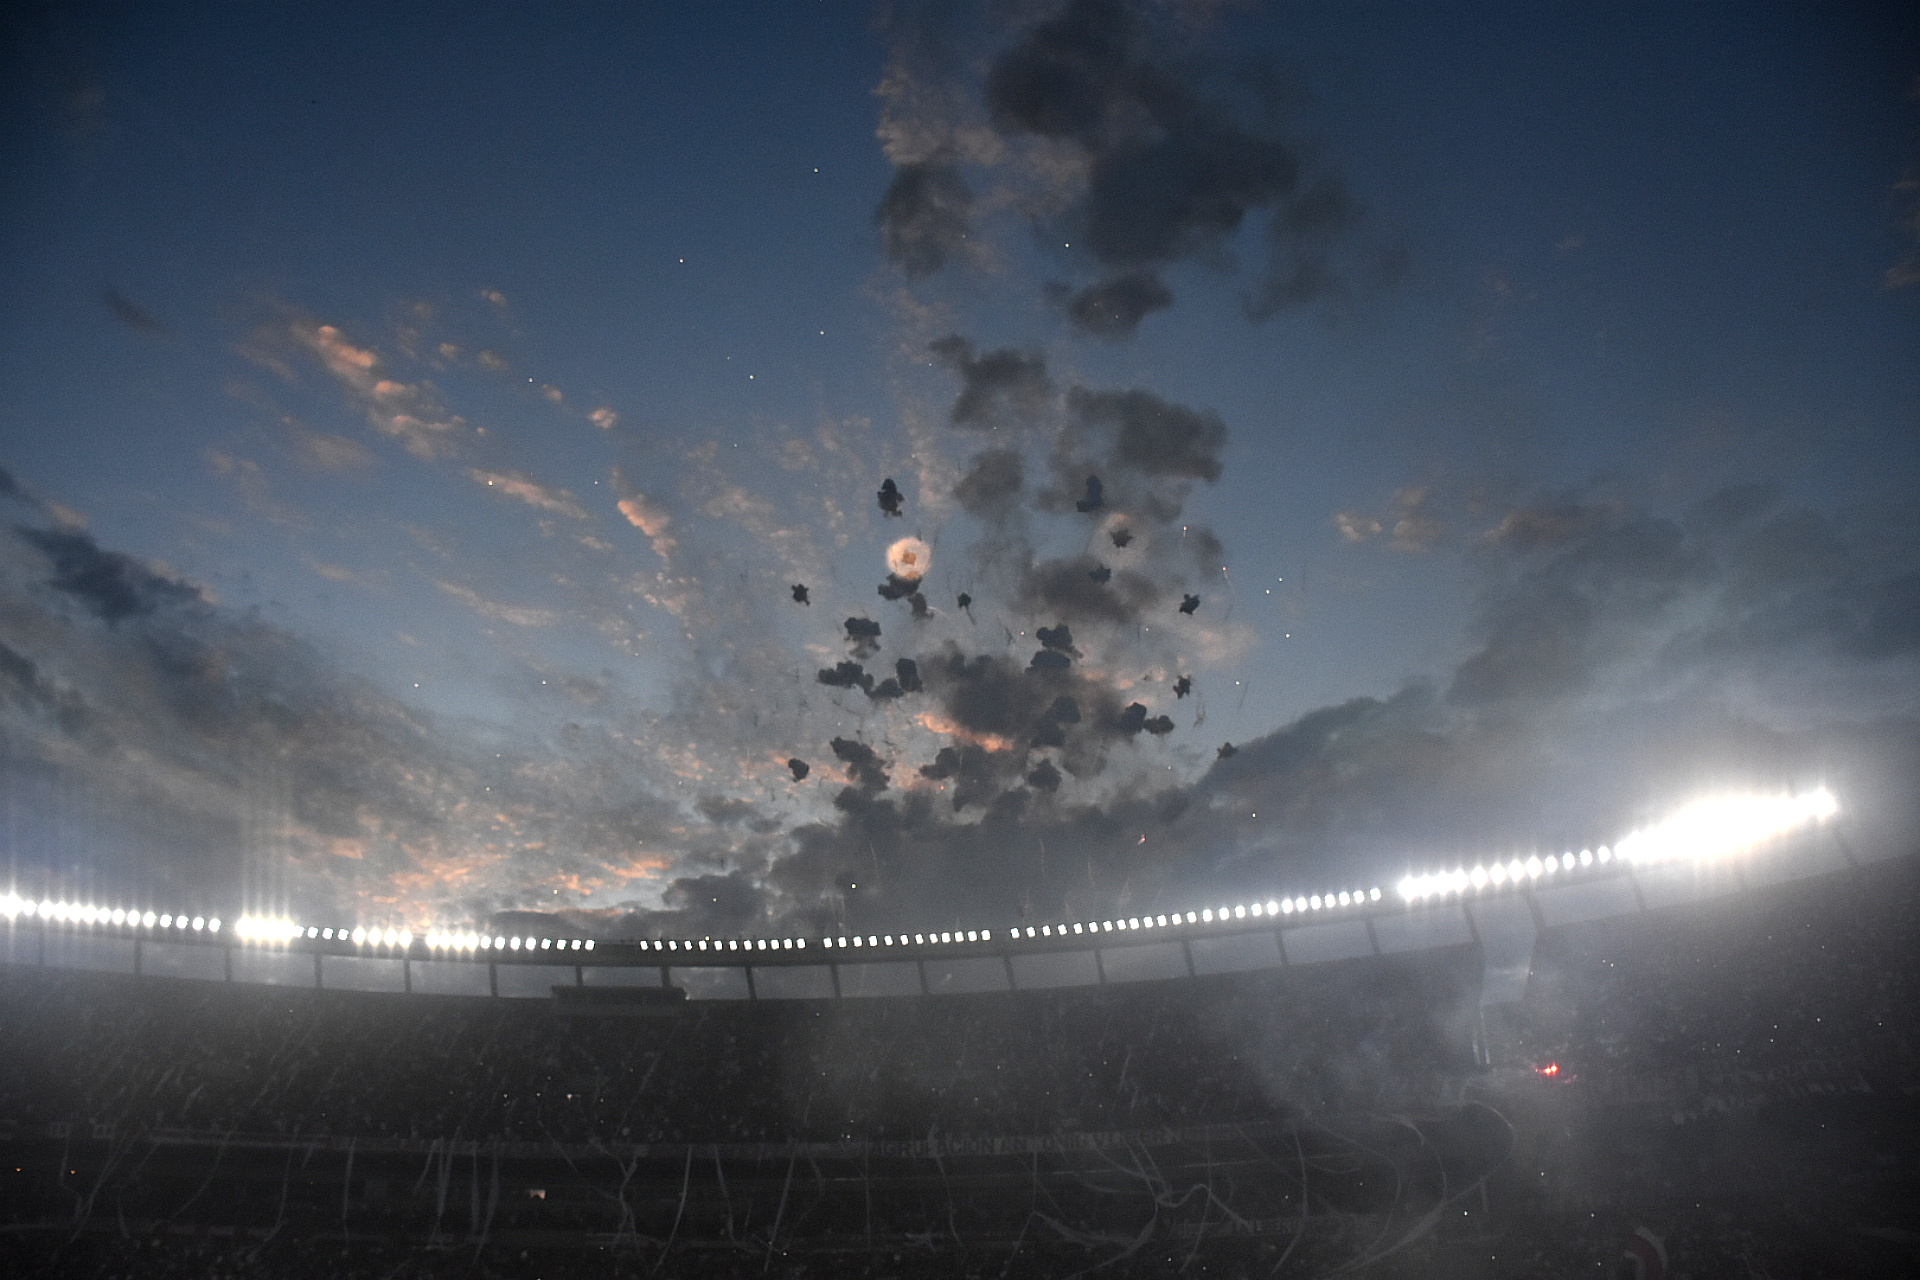 La pirotecnia formó una capa de niebla momentánea en el estadio (Crédito: Nicolas Stulberg)